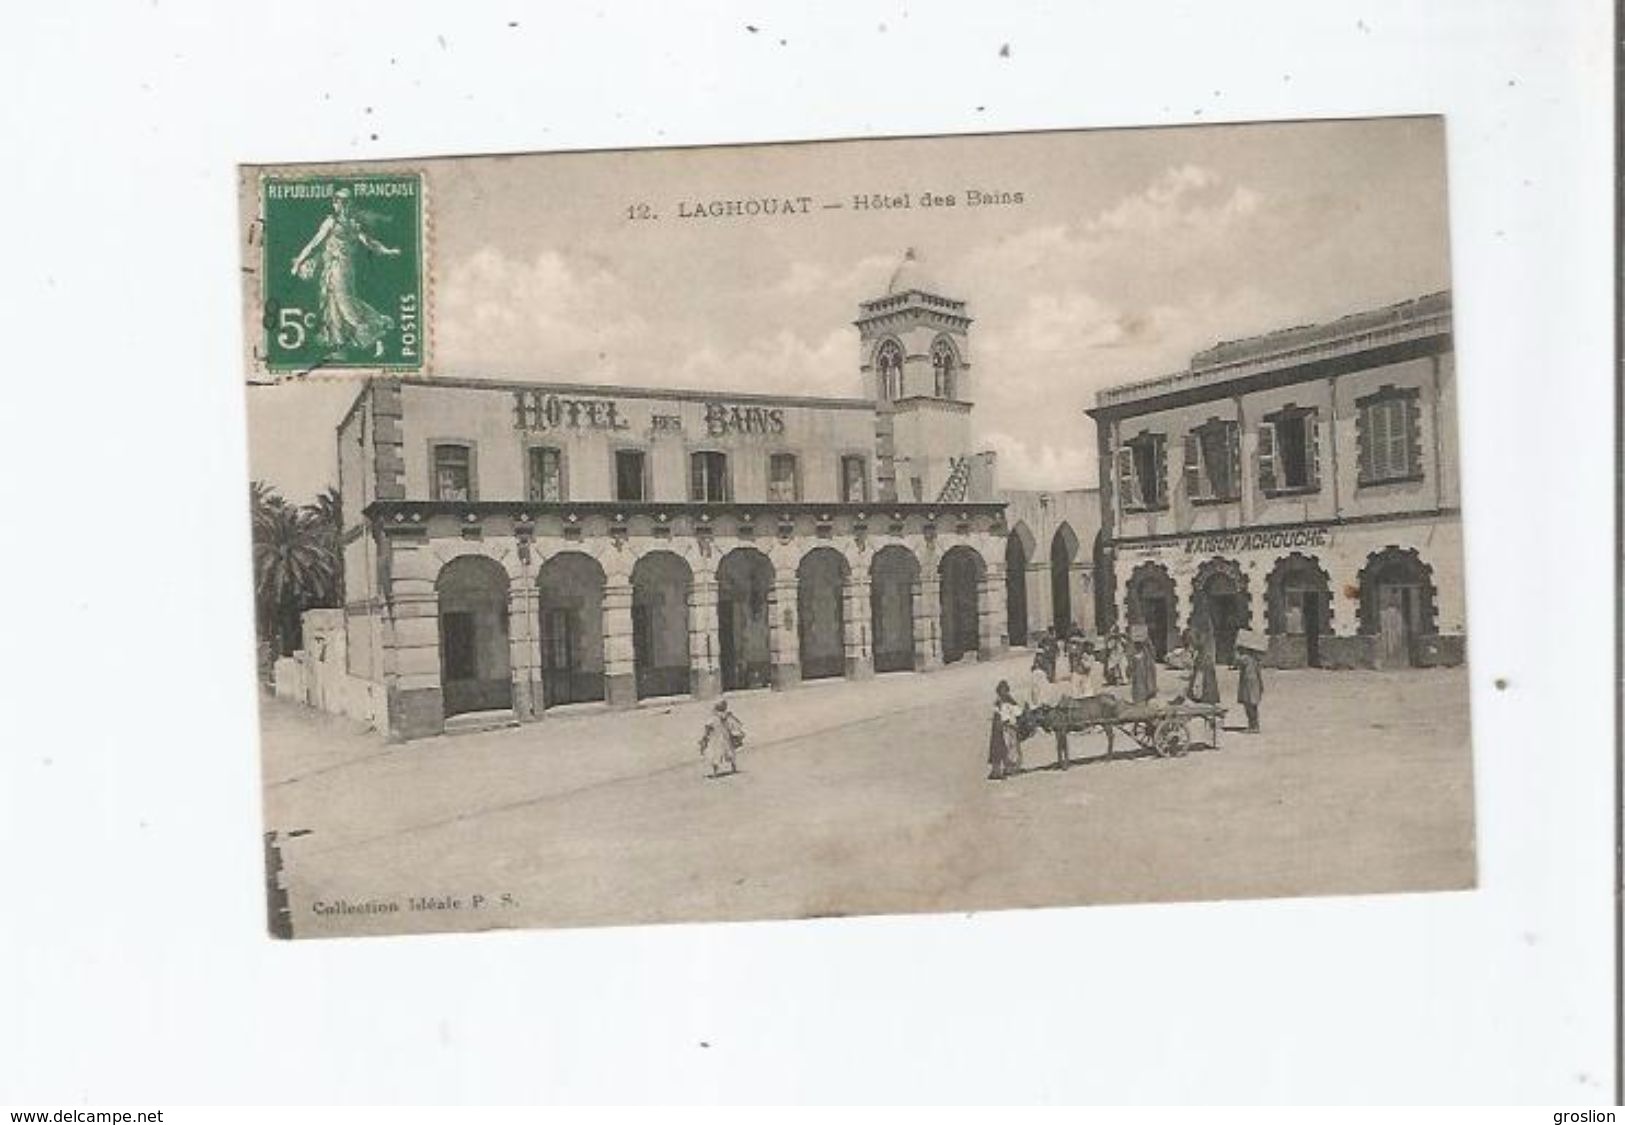 LAGHOUAT (ALGERIE) 12 HOTEL DES BAINS (ATTELAGE ANE EPICERIE MAISON ACHOUCHE ET PETITE ANIMATION) 1910 - Laghouat